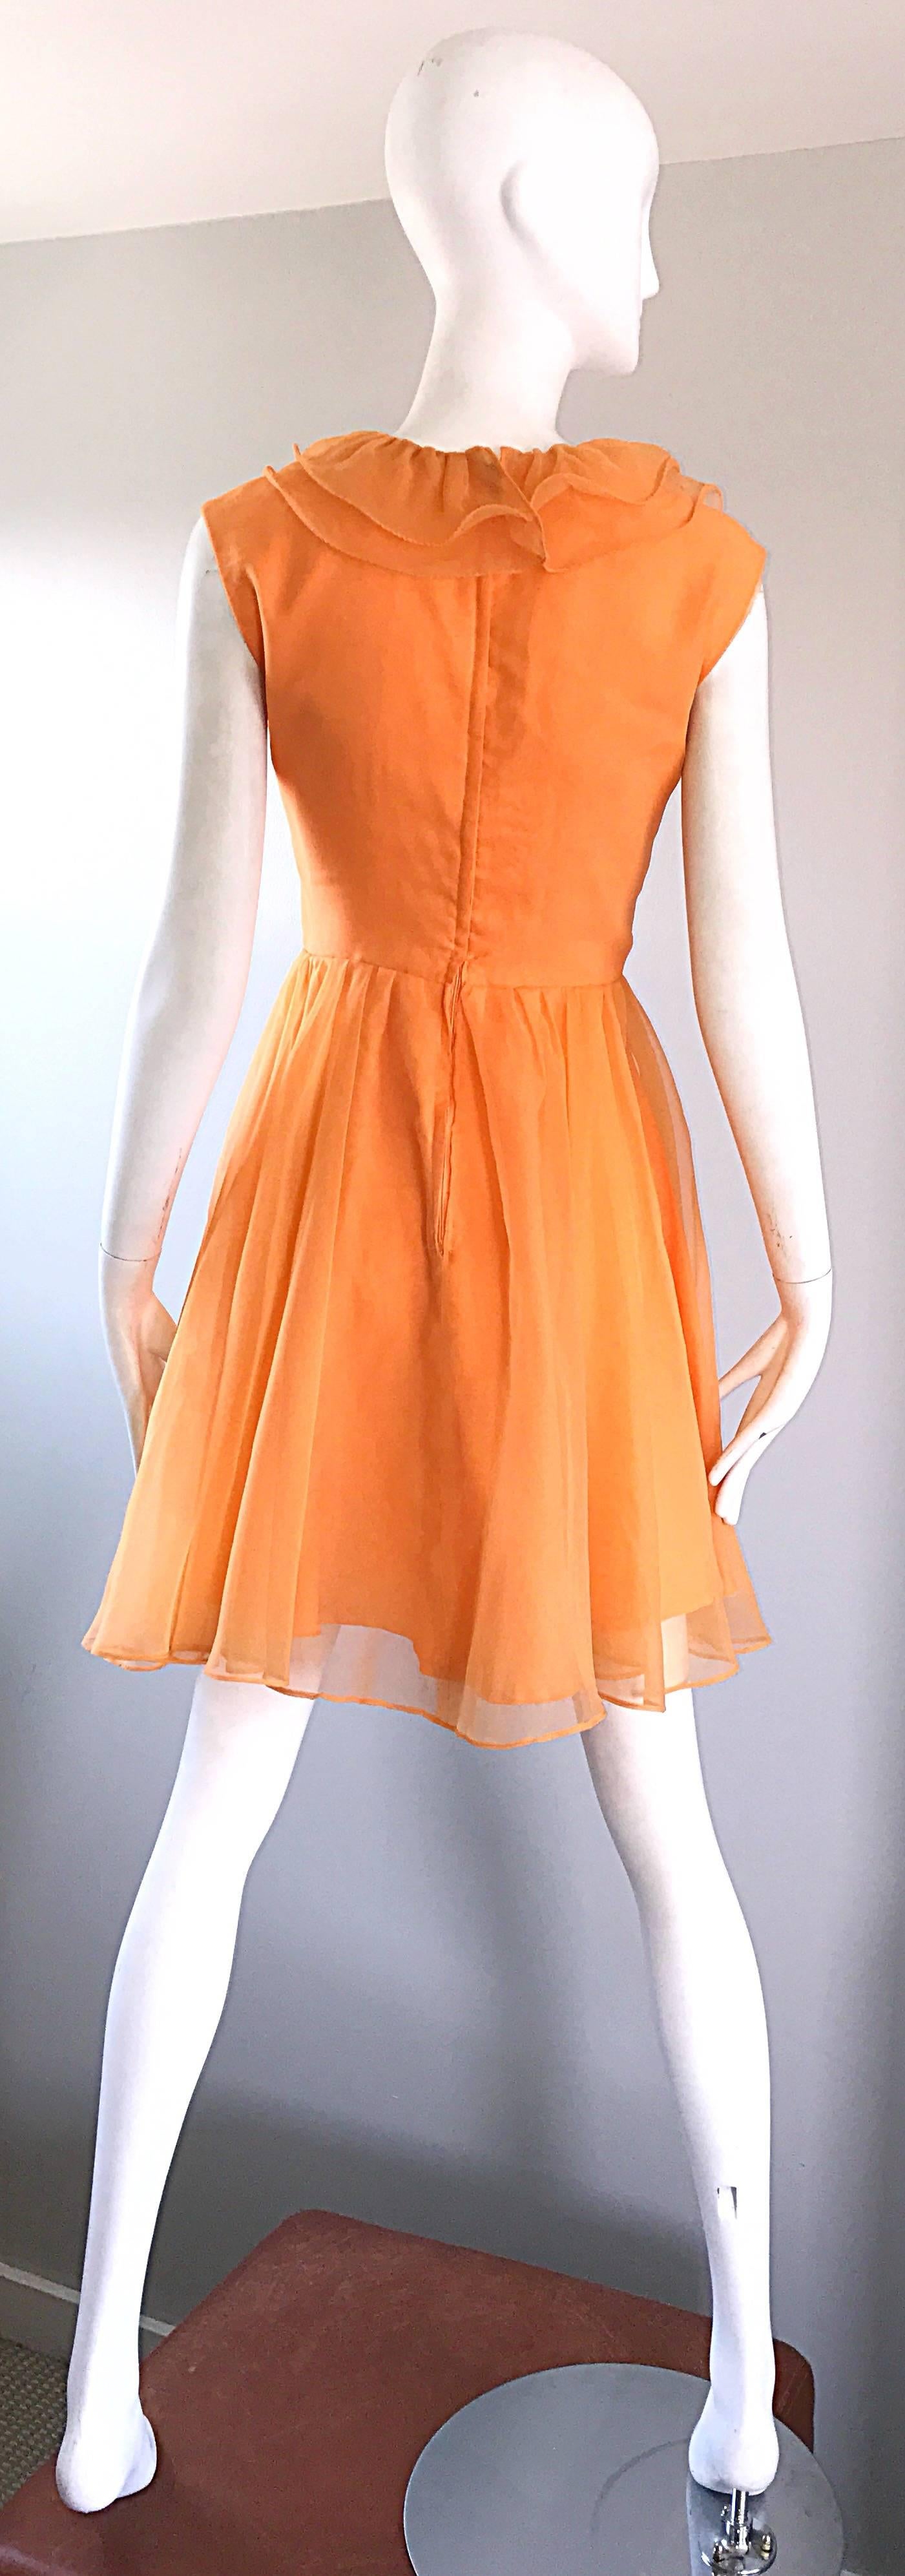 orange 60s dress